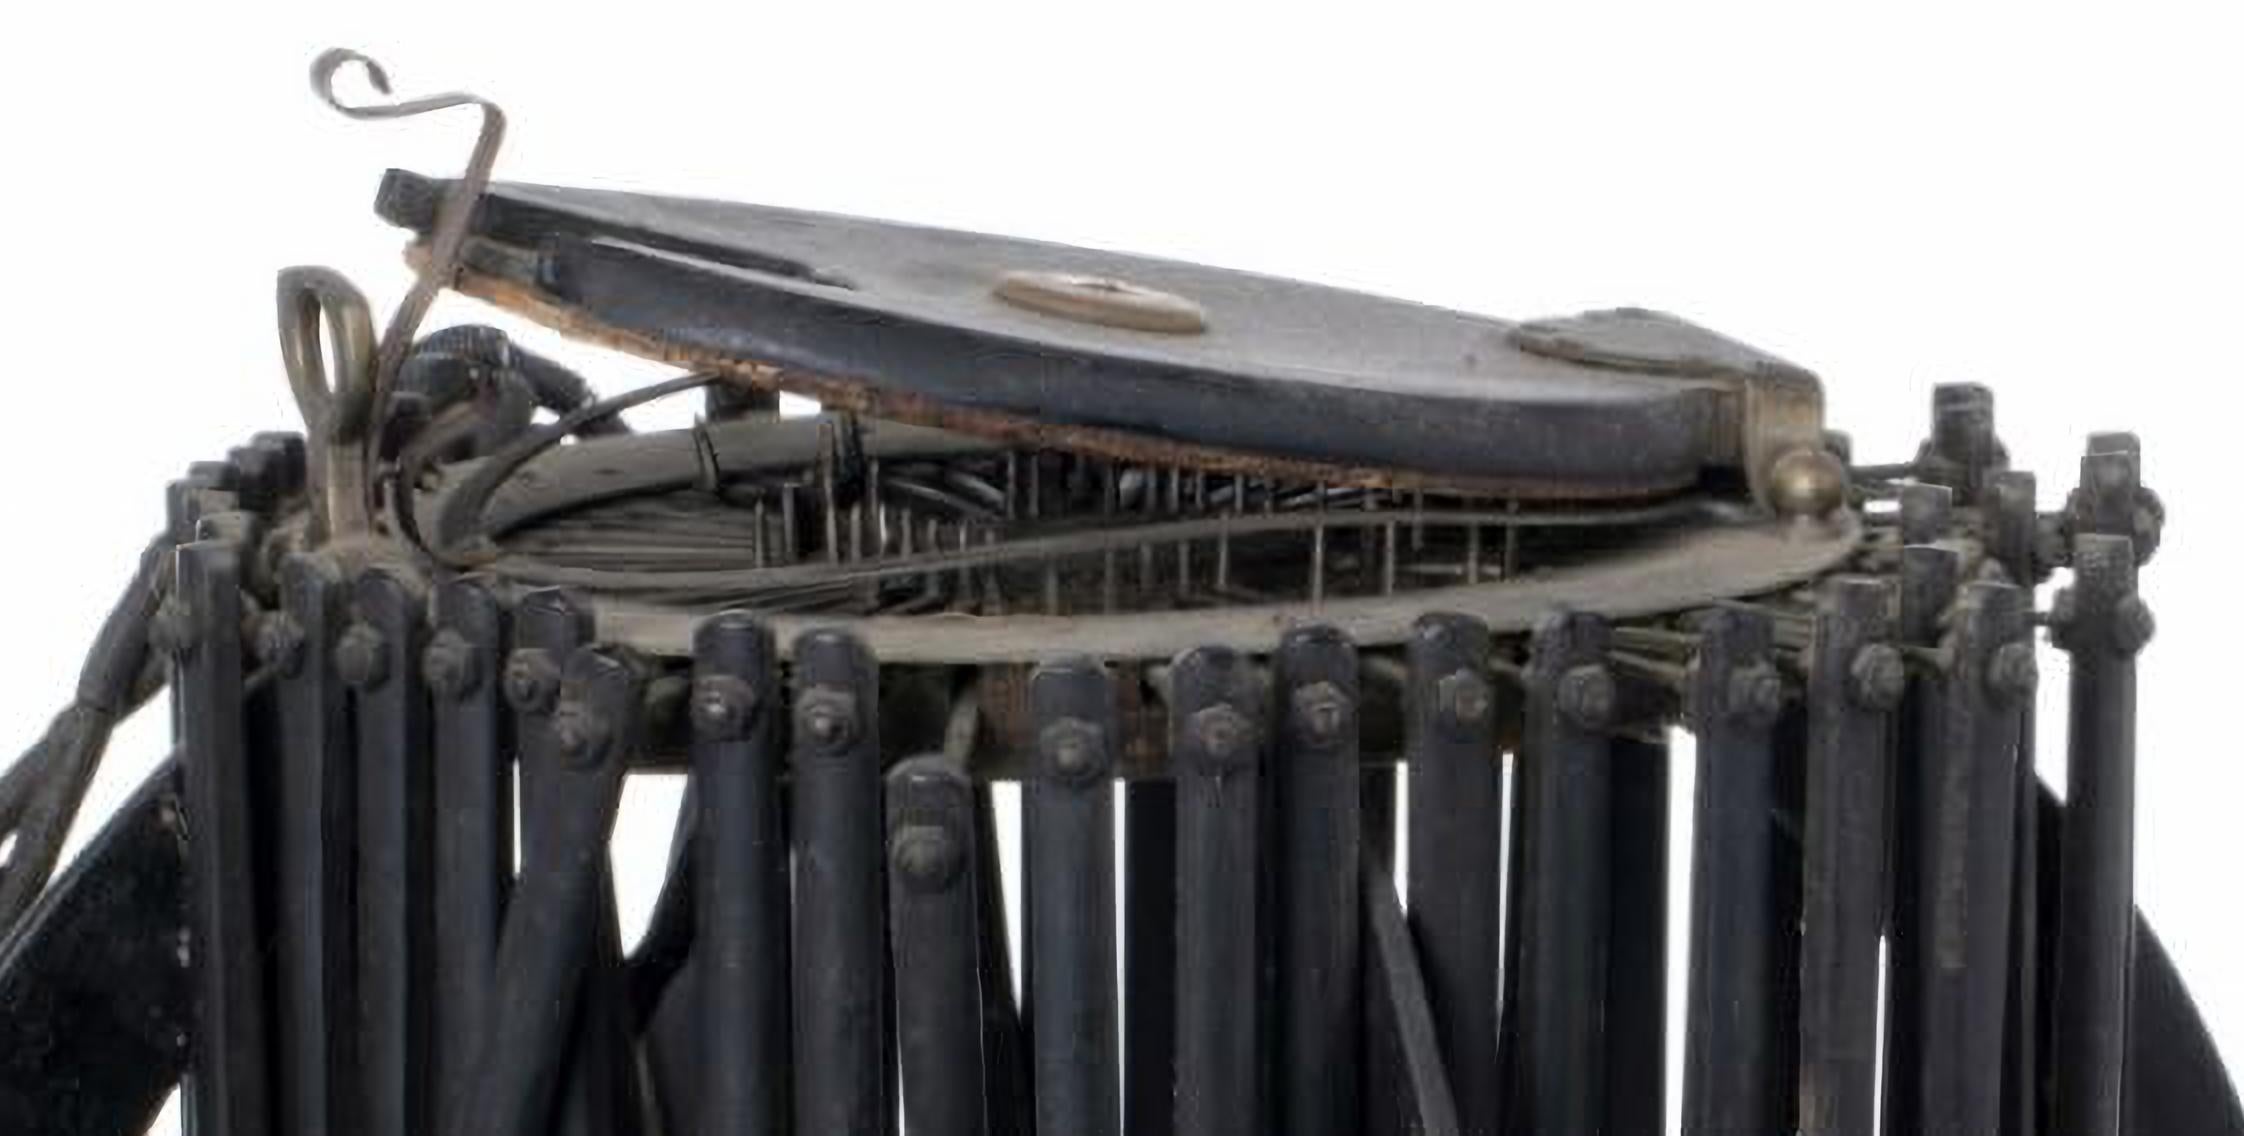 FORME ANCIENNE DE CHAPEAUX FRANCAIS début 20ème siècle

de la marque Maillard Allie en bois et métal.
Petits défauts, non testé.
Dim. : 19 x 29 cm